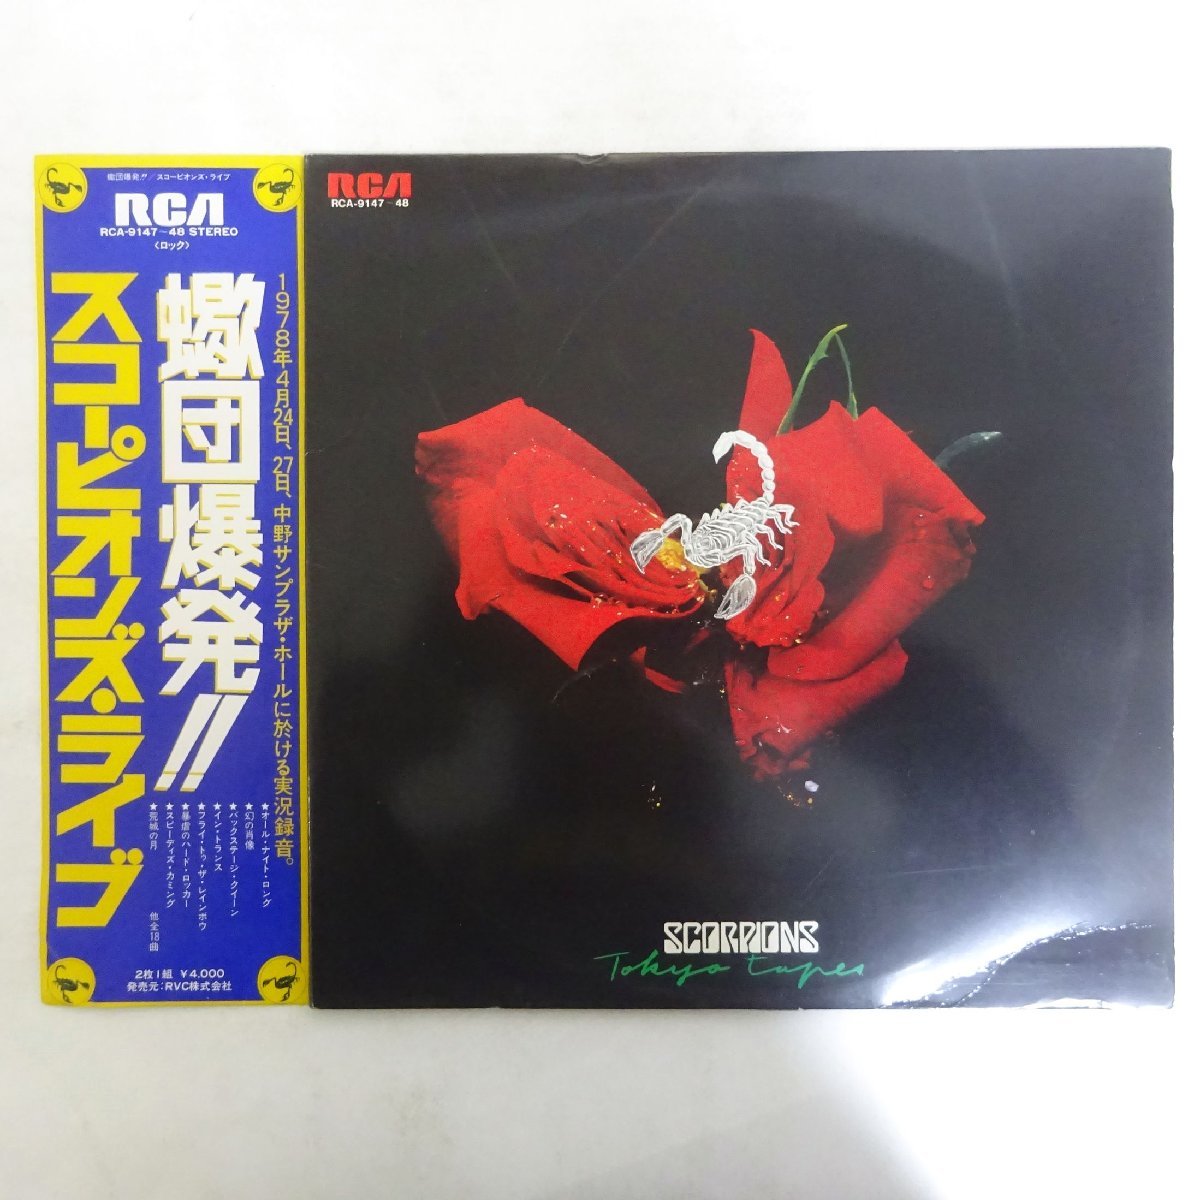 11178723;【帯付き/2LP】Scorpions / Tokyo Tapes 蠍団爆発!! スコーピオンズ・ライブ_画像1